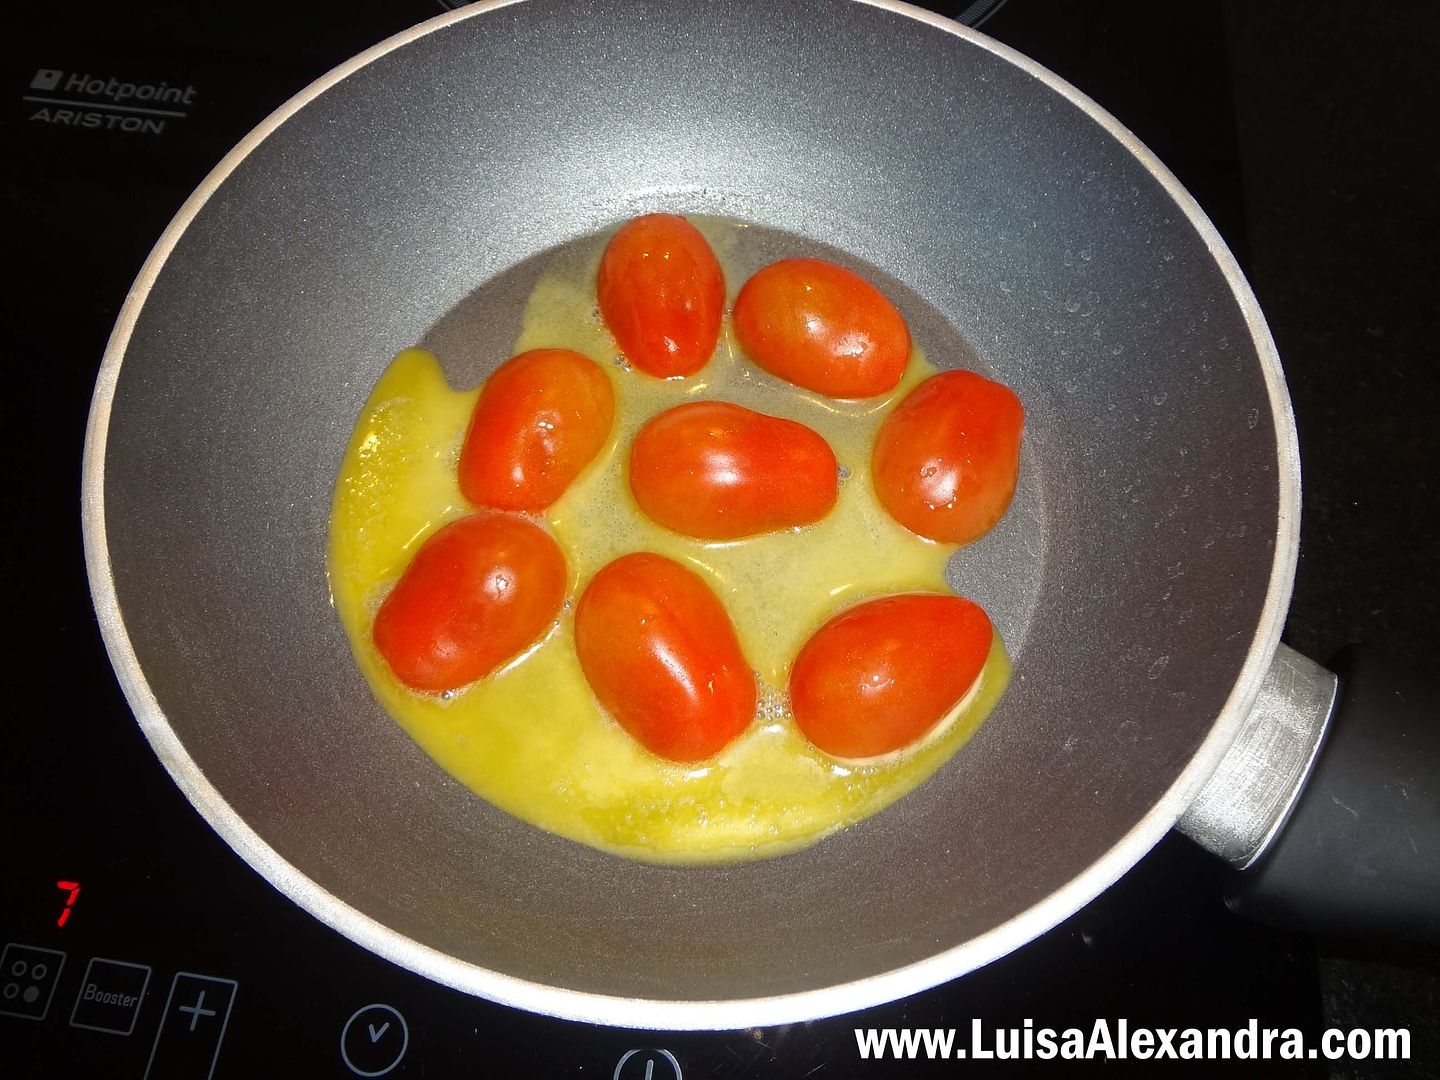 Ovos Mexidos com Tomate Berry, amendoas, sementes de abobora e queijo cool photo file-883.jpg